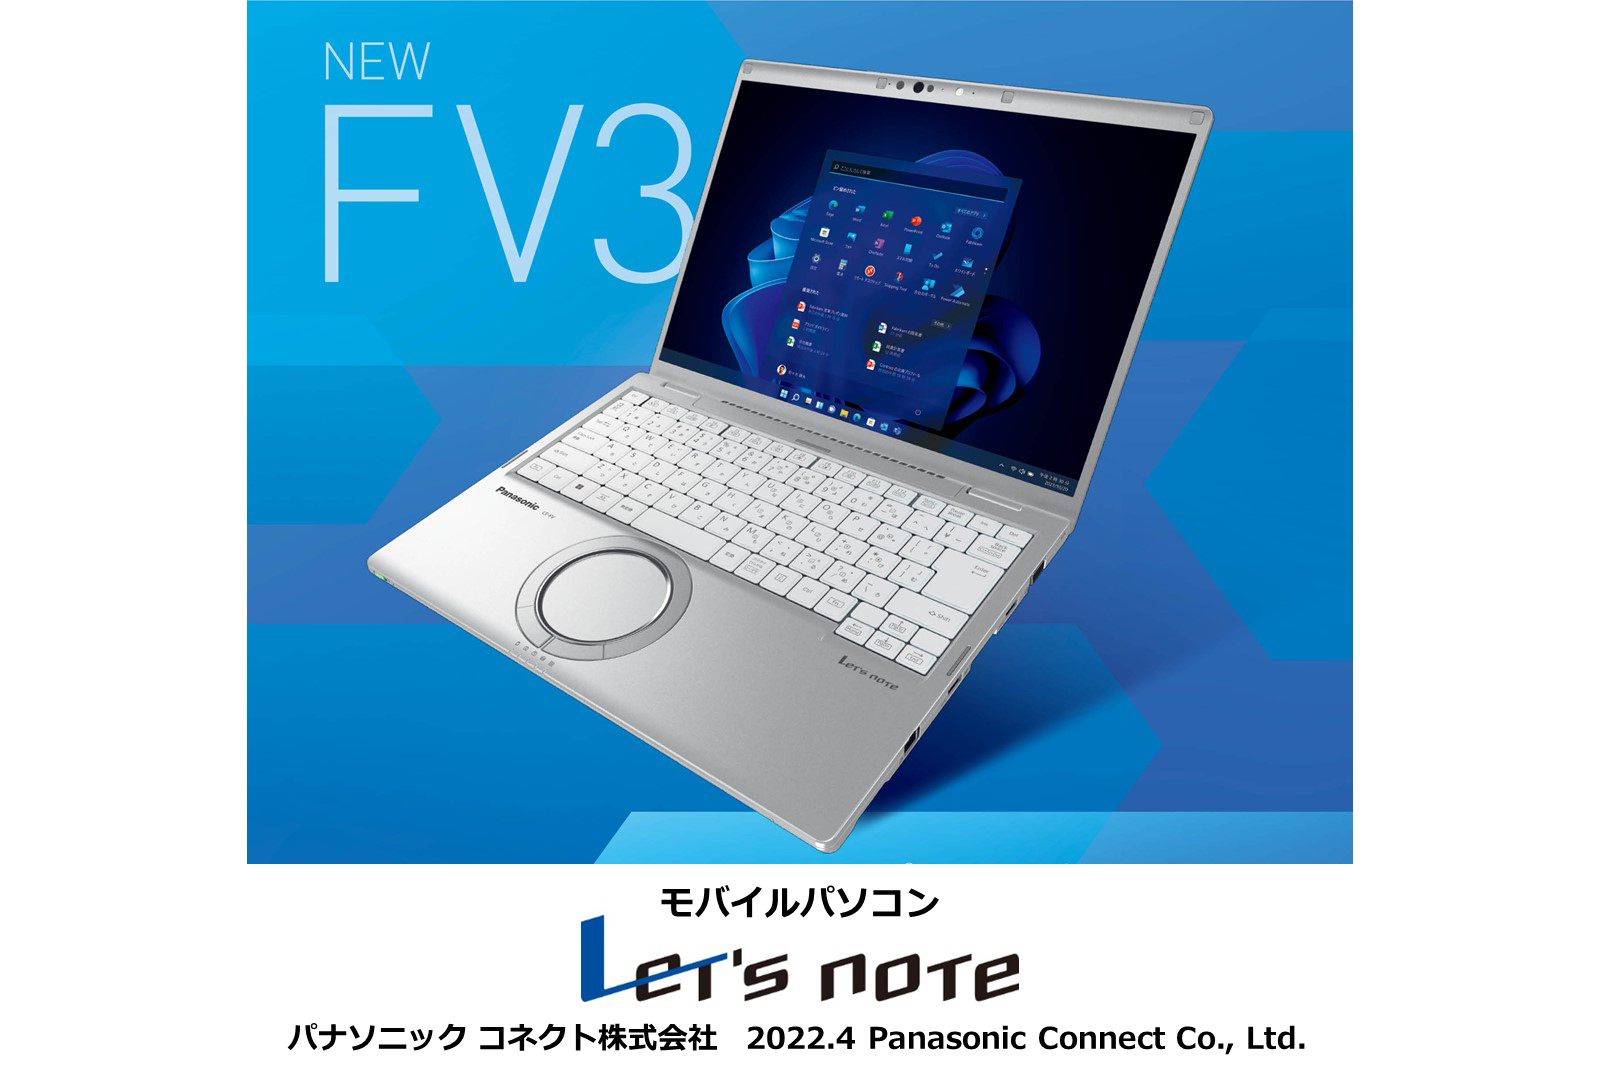 モバイルパソコン「Let's note」法人向け新シリーズ「FV3」